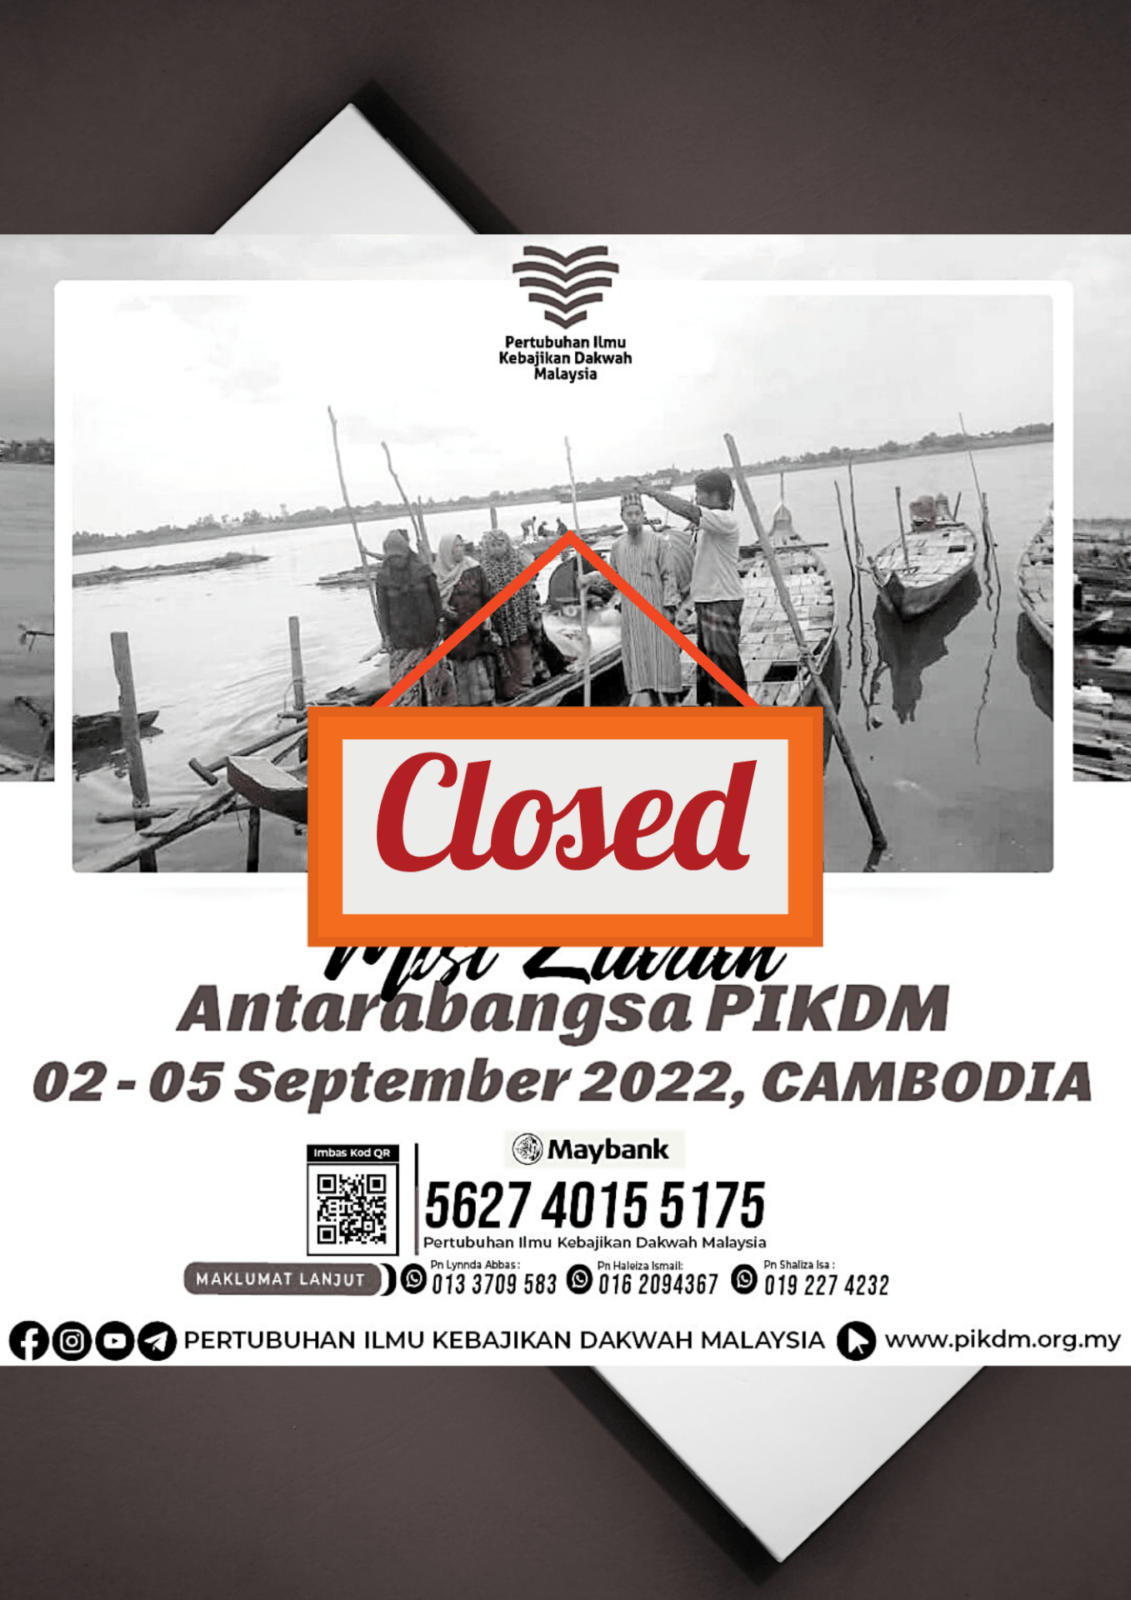 Misi Ziarah Antarabangsa Pikdm Cambodia Closed